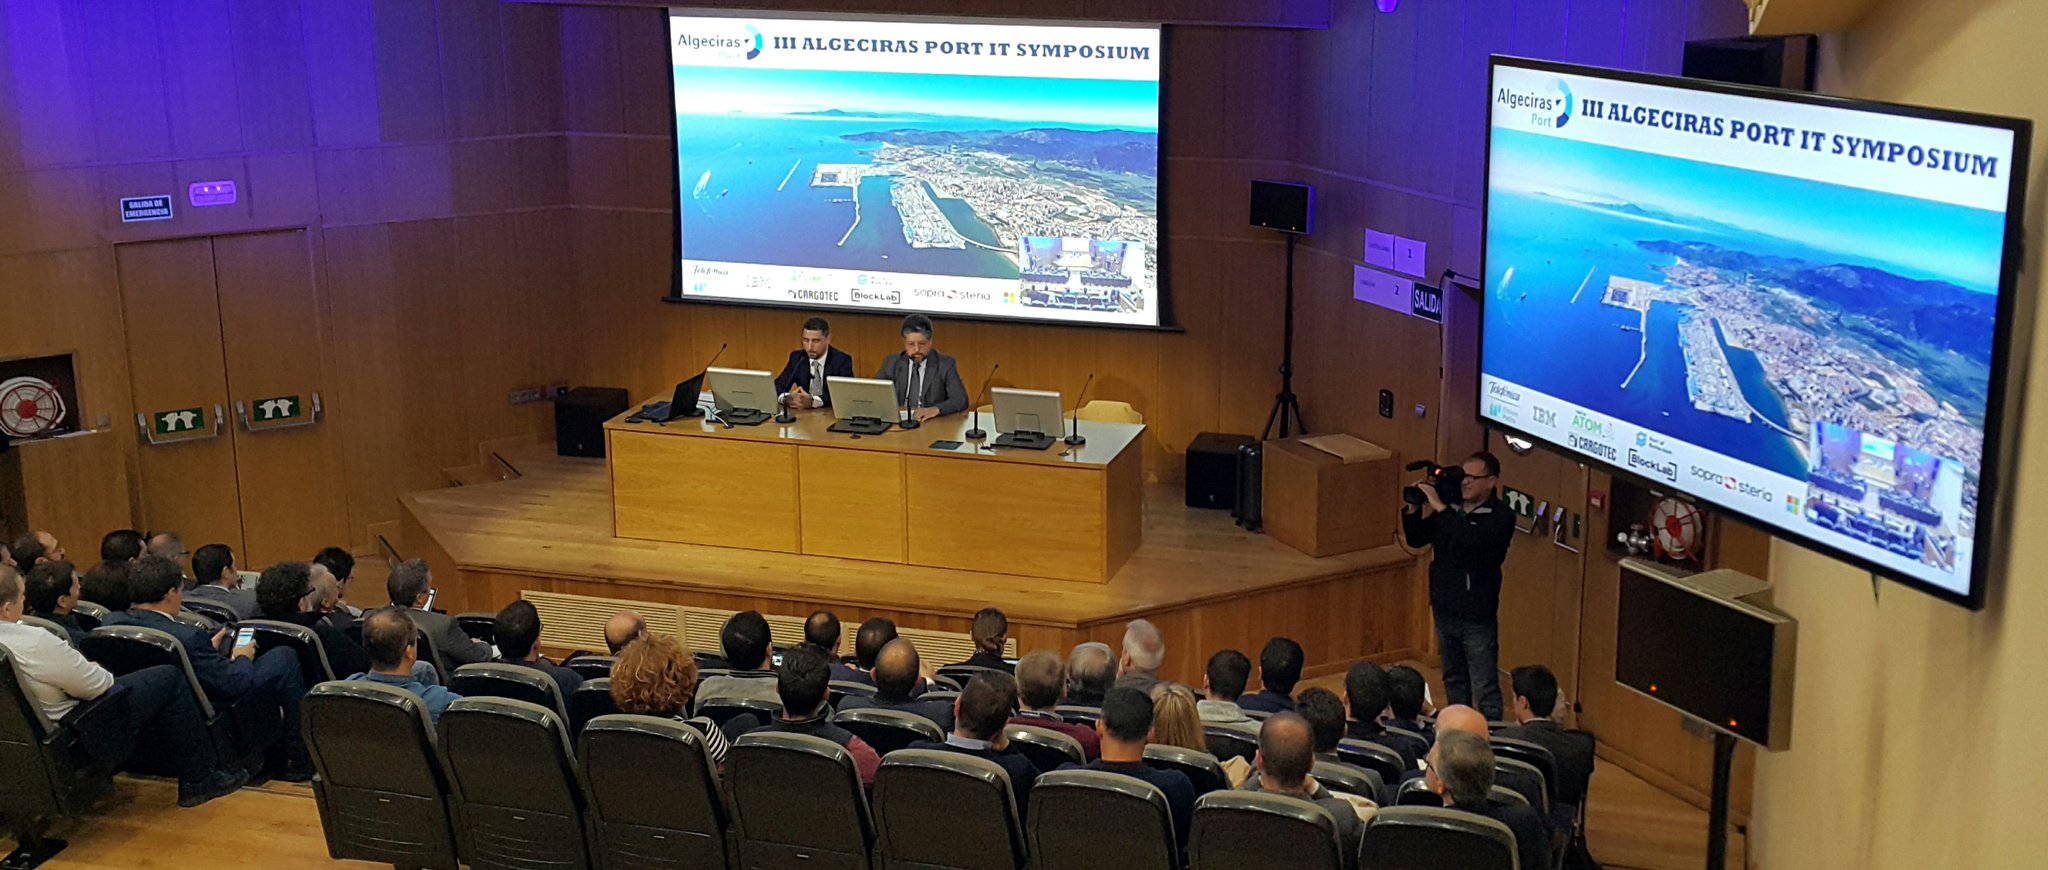 Bienvenida al III Algeciras Port IT Symposium